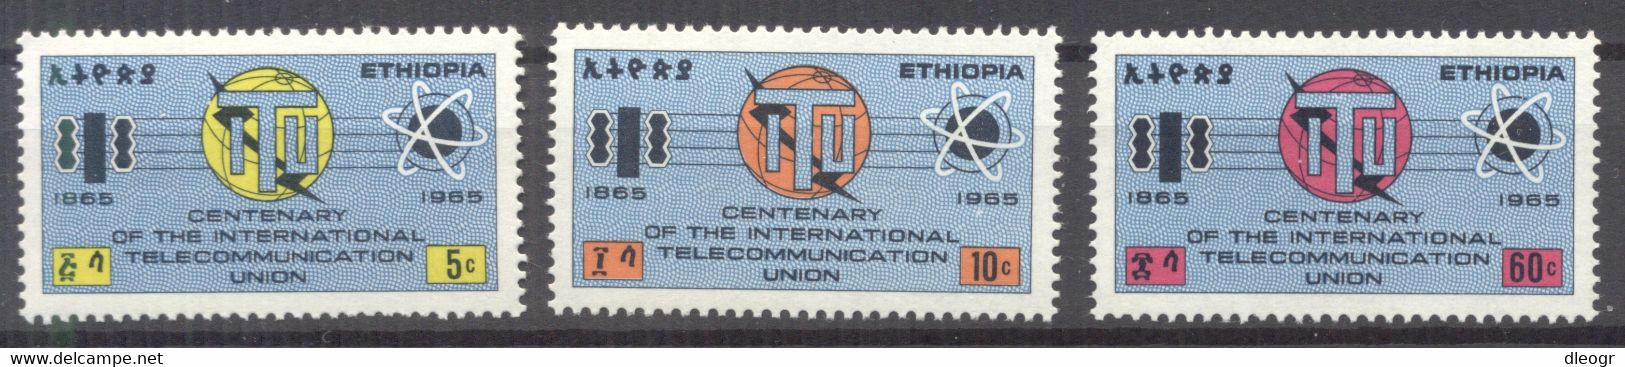 Ethiopia 1965 Cent. Of The ITU MNH VF - Ethiopie